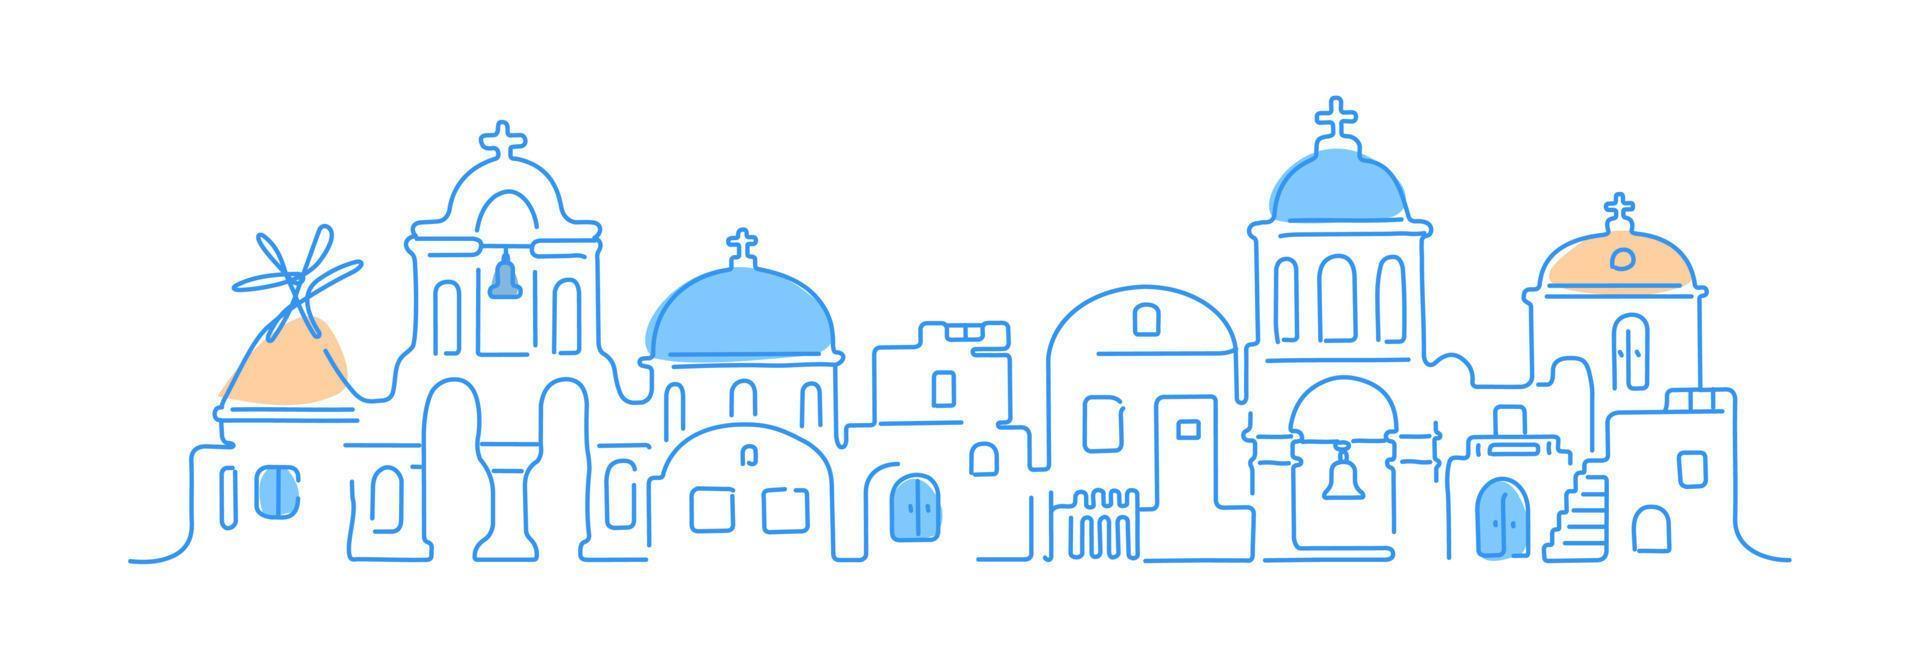 île de santorin, grèce. architecture blanche traditionnelle et églises orthodoxes grecques avec des dômes bleus et un moulin à vent. illustration linéaire vectorielle. vecteur